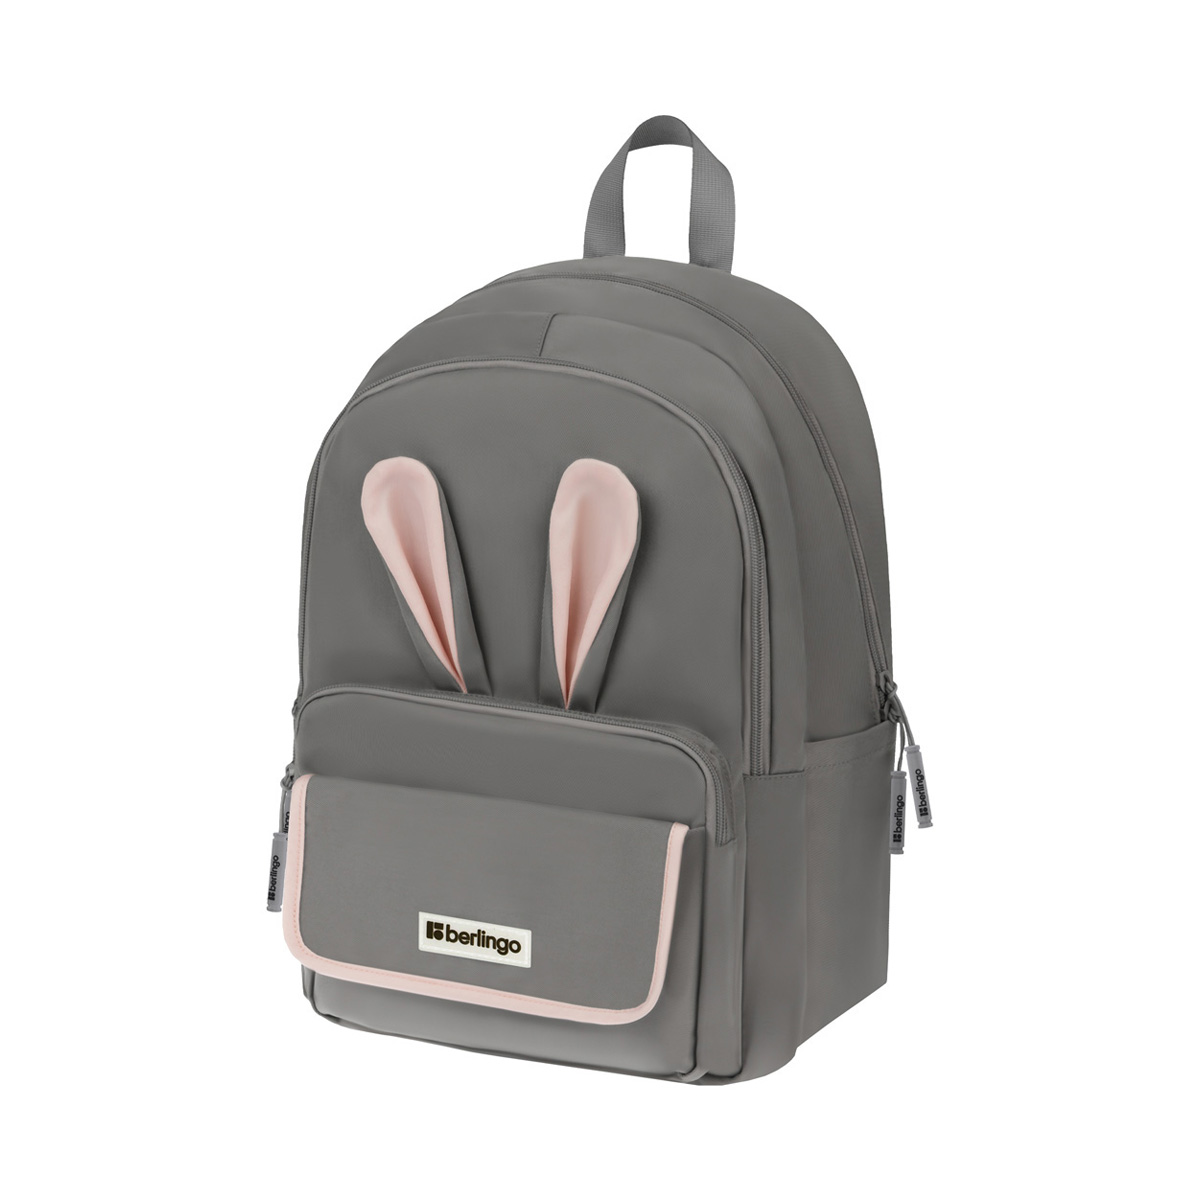 Рюкзак Berlingo Cool Bunny grey 41*29*11см, 2 отделения, 4 кармана, уплотненная спинка (Вид 1)